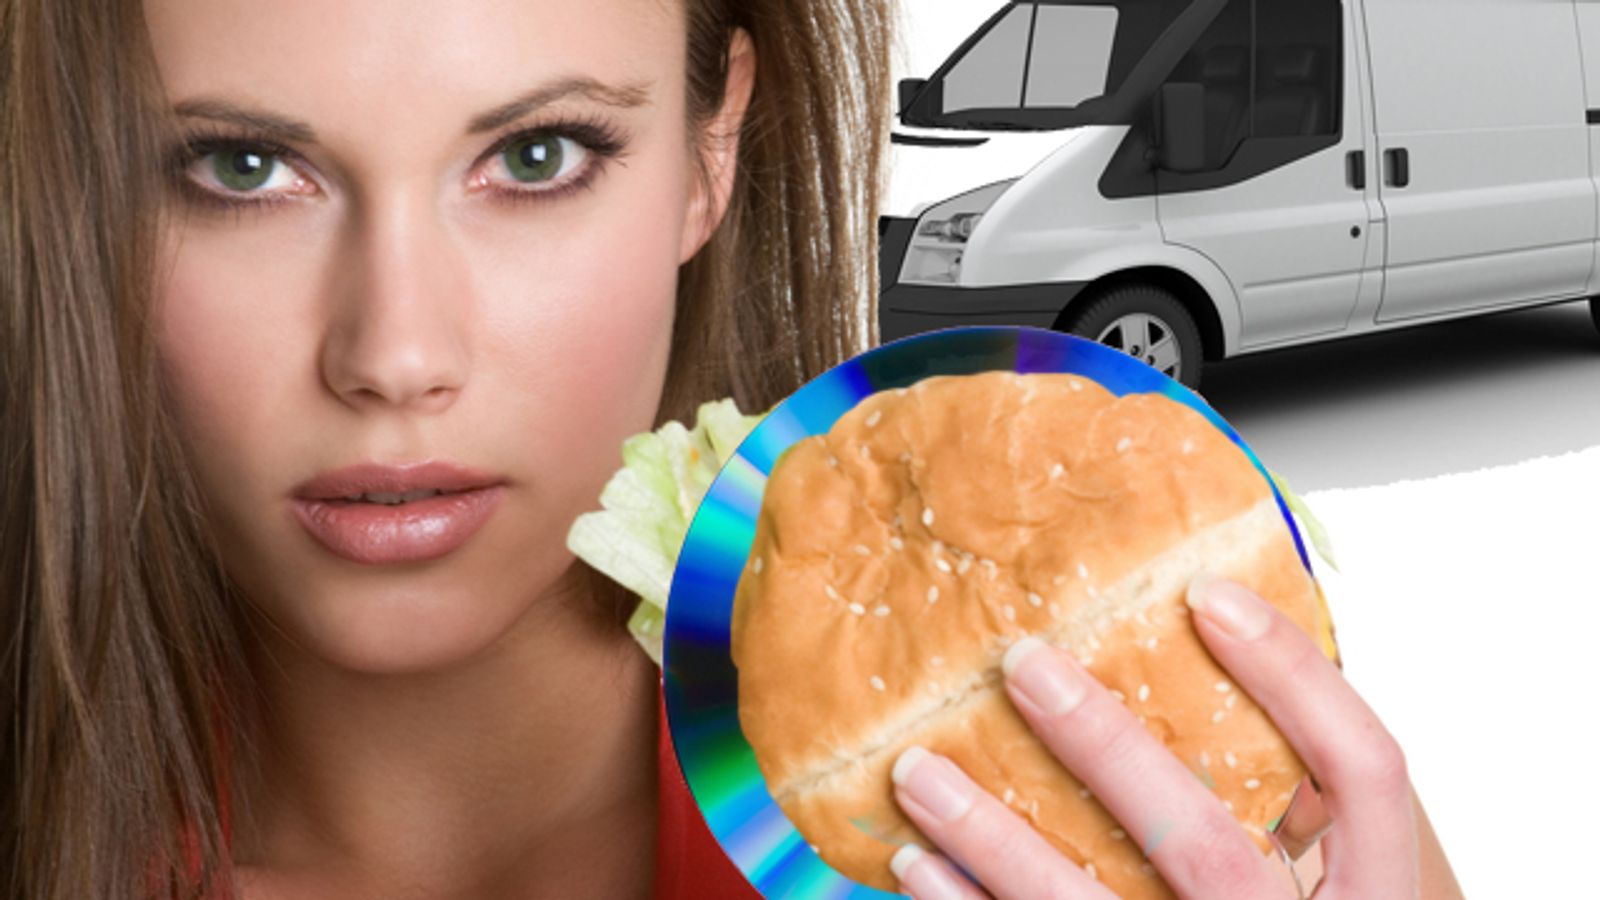 Bobbies Blow Lid Off Porn-Serving Burger Van